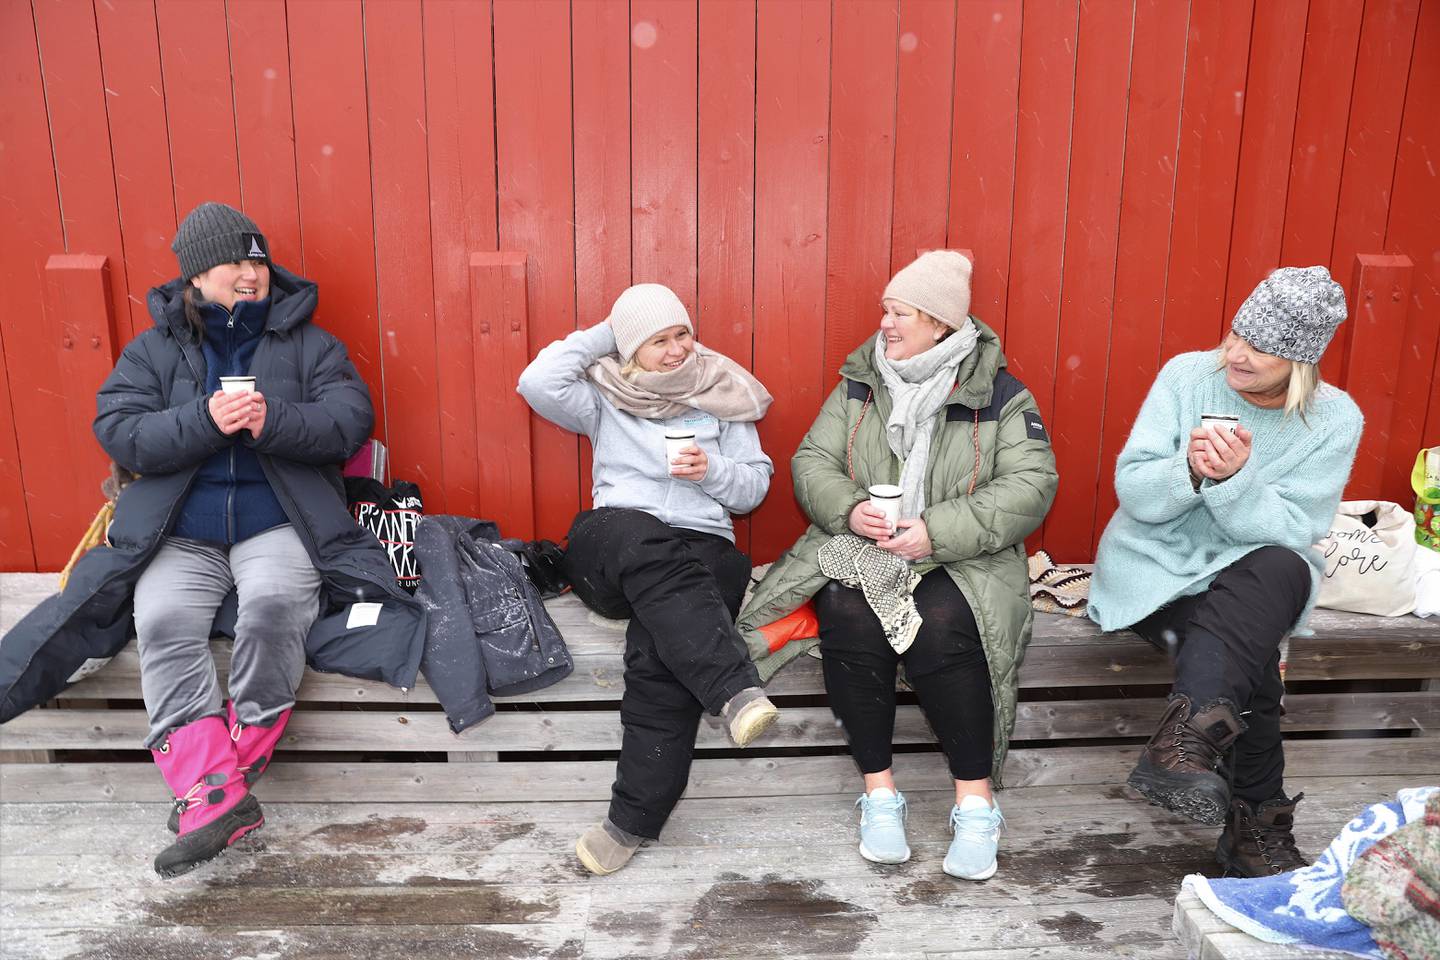 Det sosiale fellesskapet og kaffe- og tekosen etterpå er en viktig del av isbadingen for Erika Kurahachi (fra venstre), Marianne Storm, Trude Thorsdatter Hansen og Grete Sumstad.